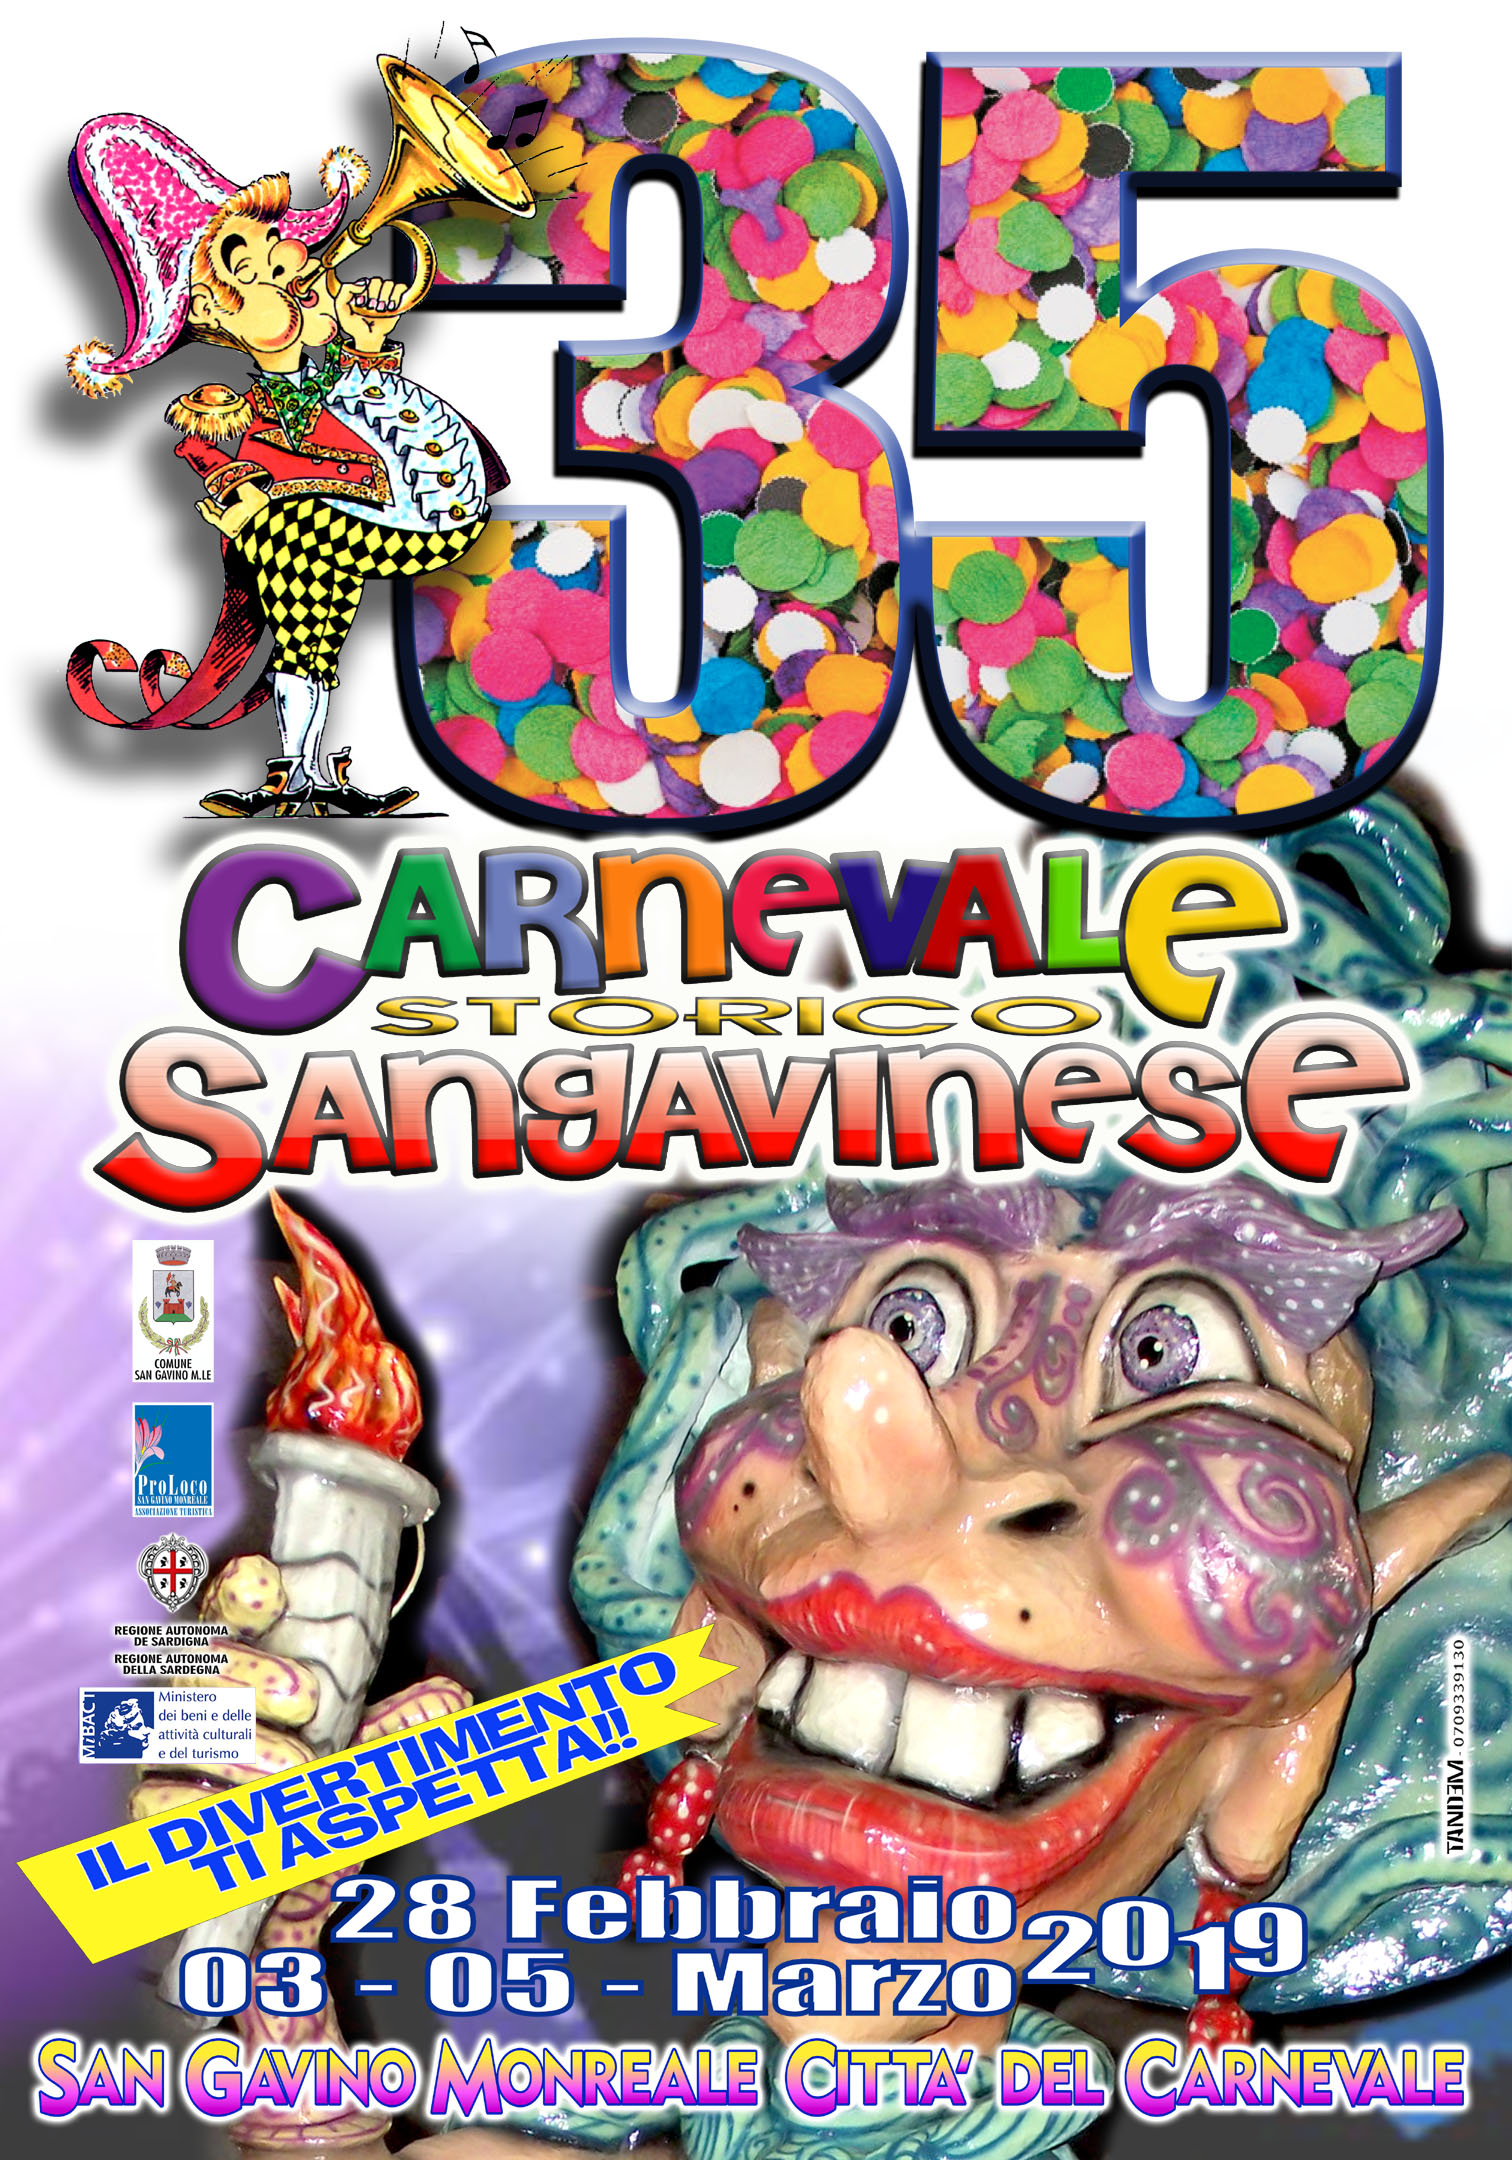 Aspettando il Carnevale Sangavinese 2019... ecco un assaggio del programma!